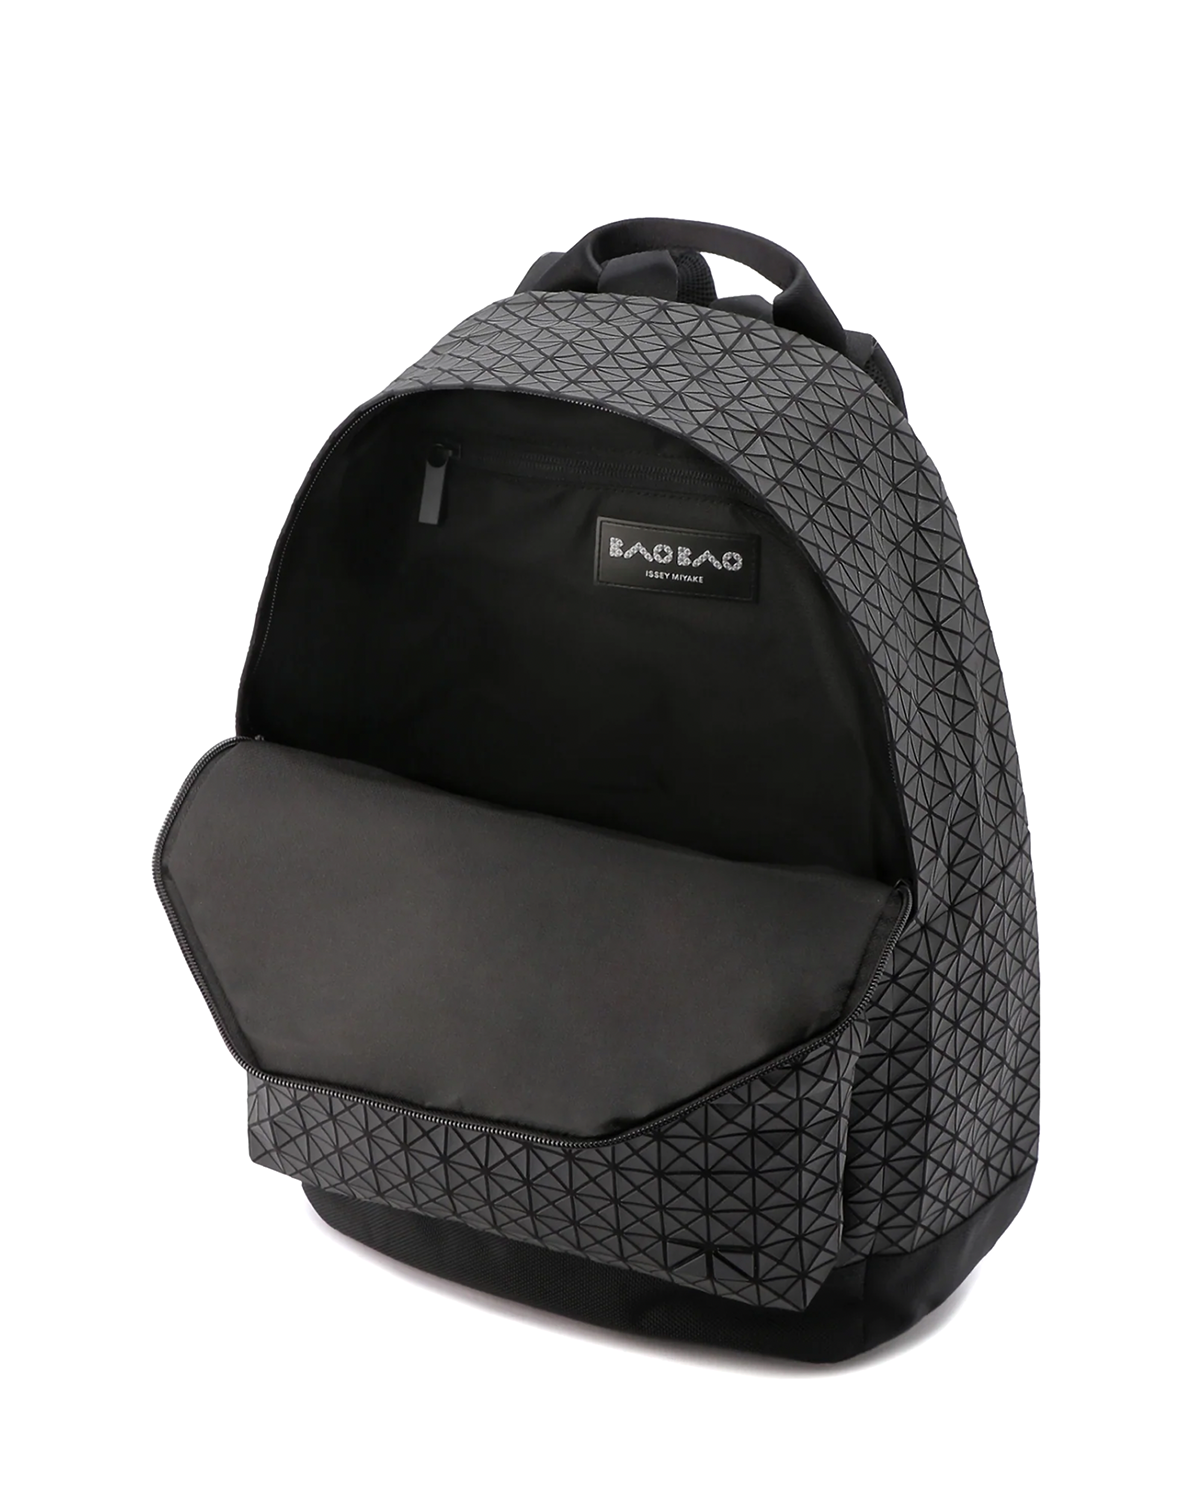 BAO BAO Issey Miyake Liner Backpack Black (no.16) – LIKELIHOOD